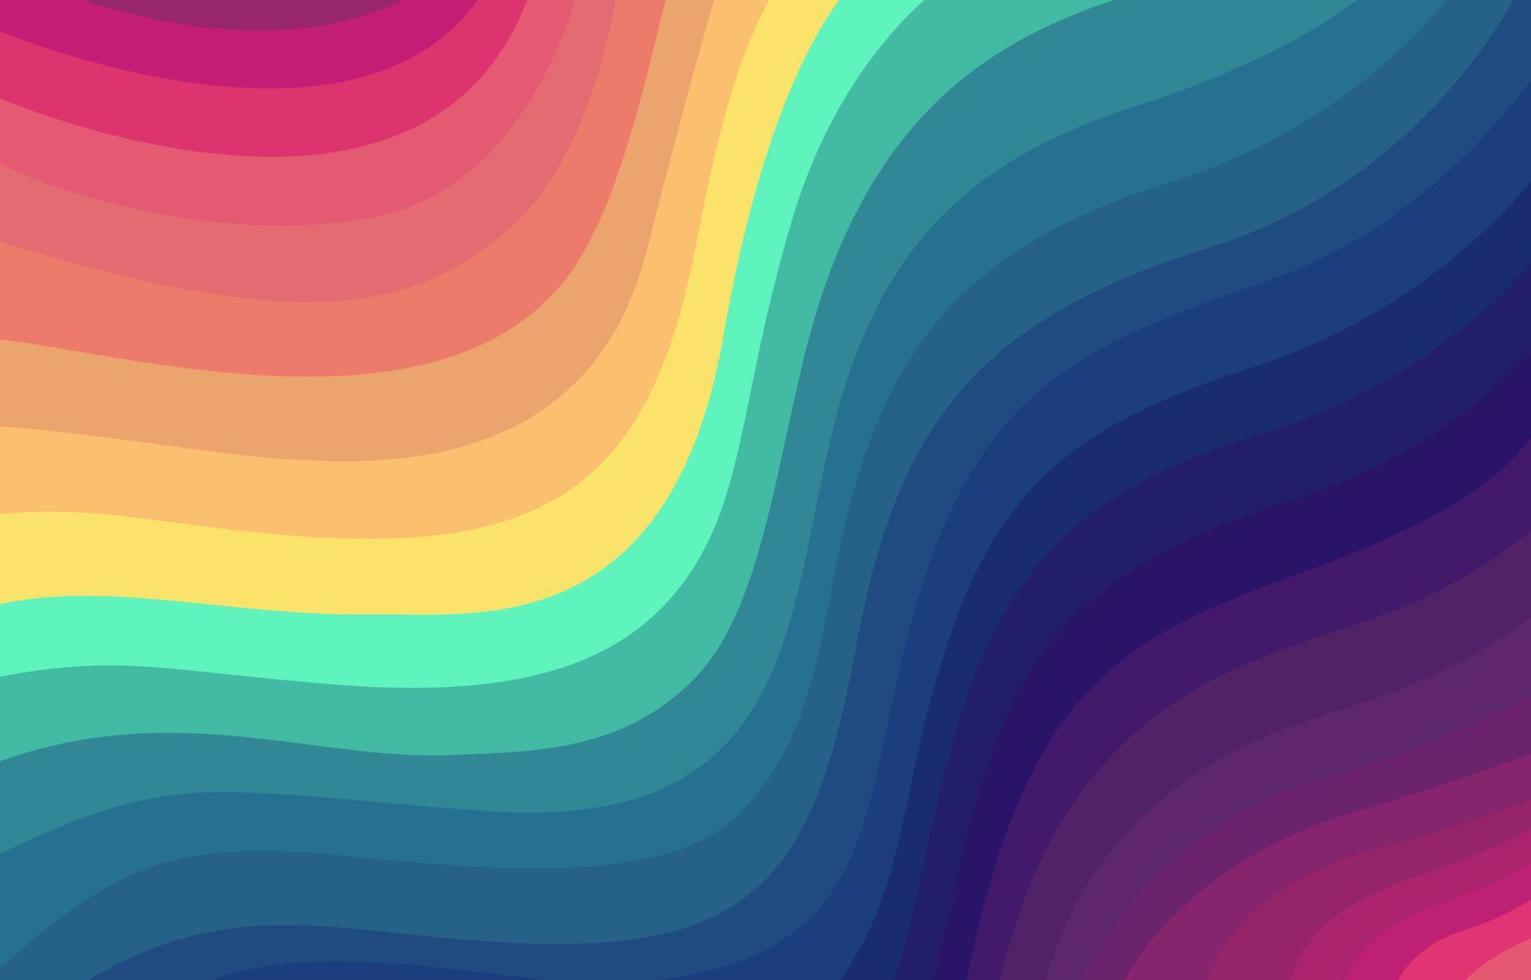 kleurrijke regenboog golven achtergrond vector